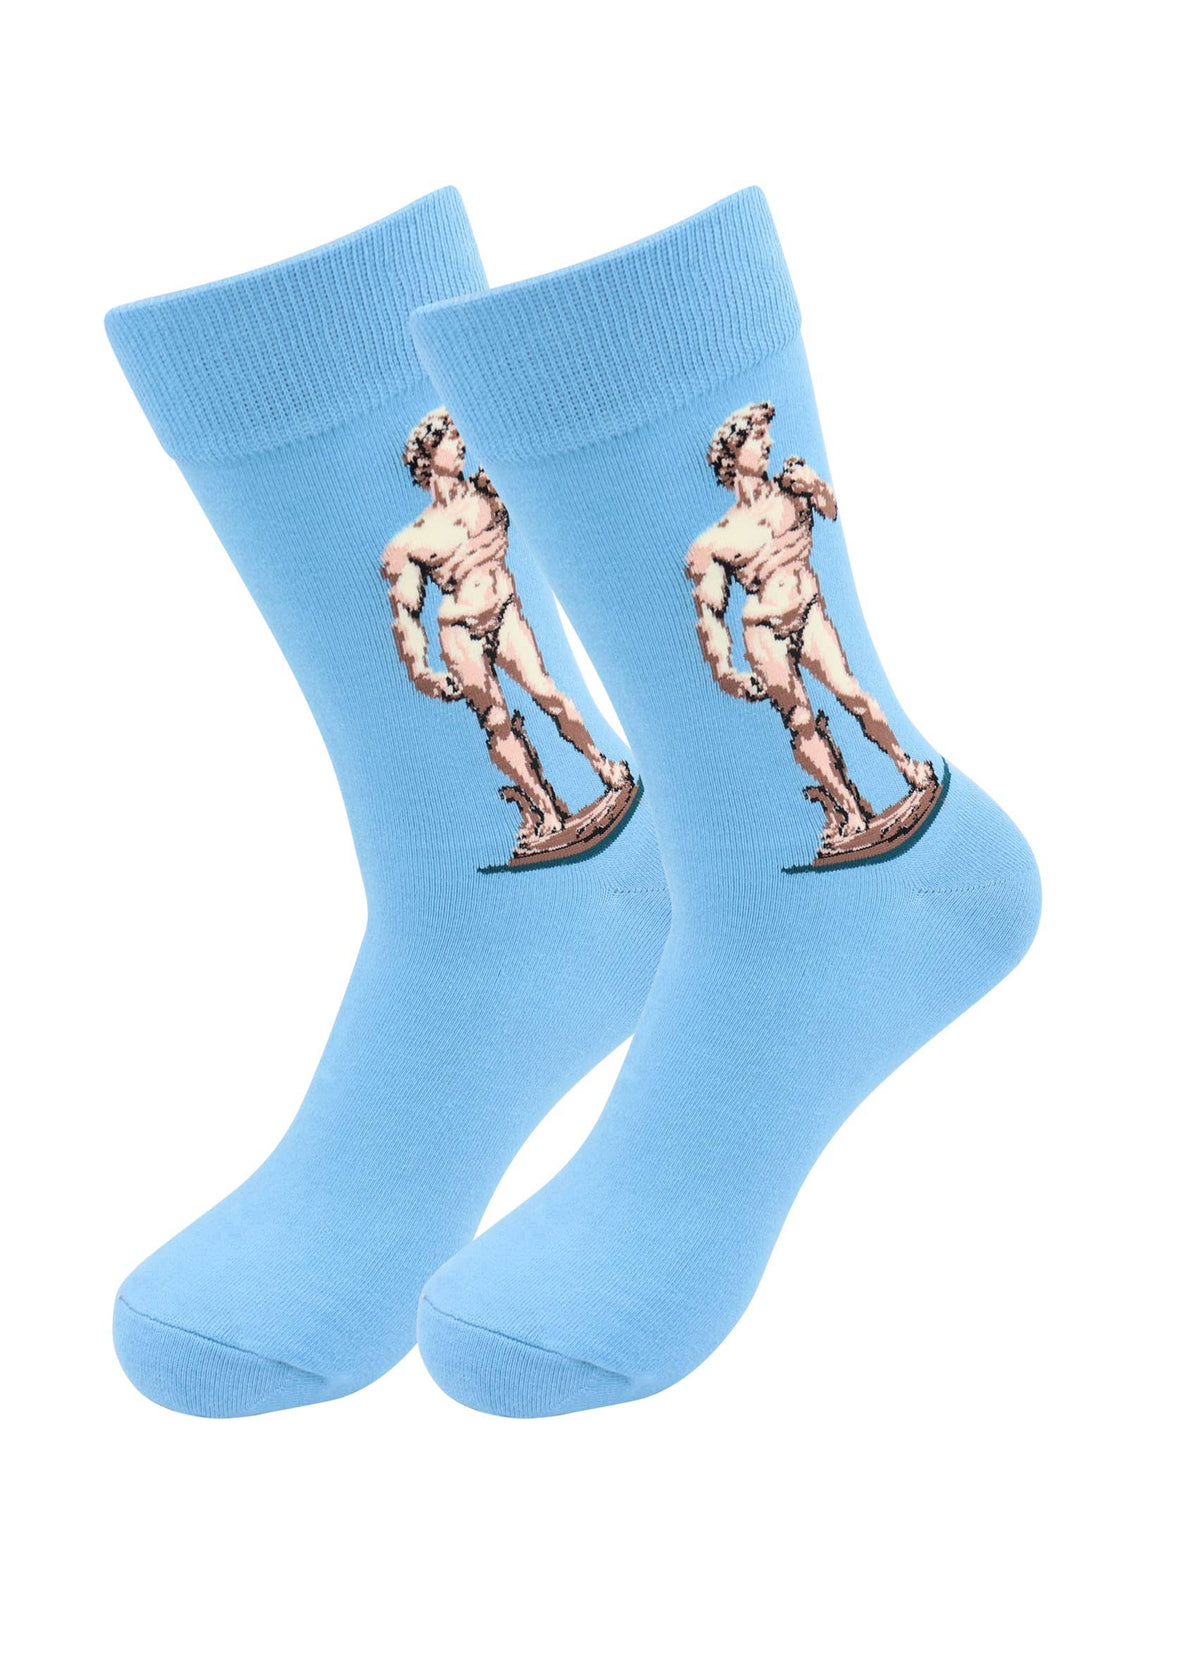 Artists Socks - Kiss, David, Van Gogh - Fun Comfy Socks